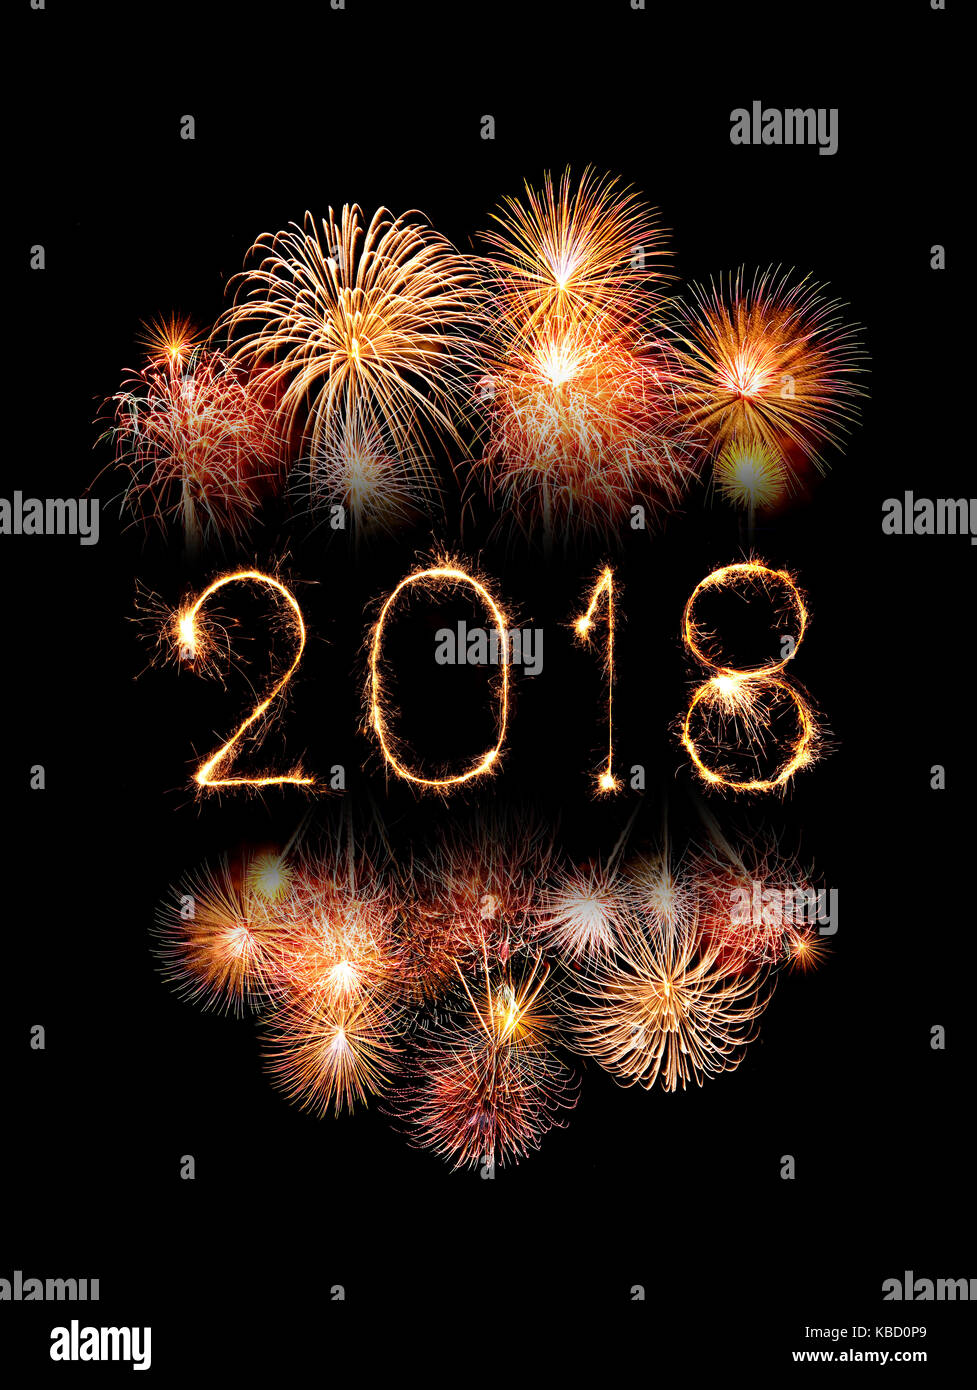 Feliz año nuevo 2018 escrito con destellos de fuegos artificiales por la noche Foto de stock